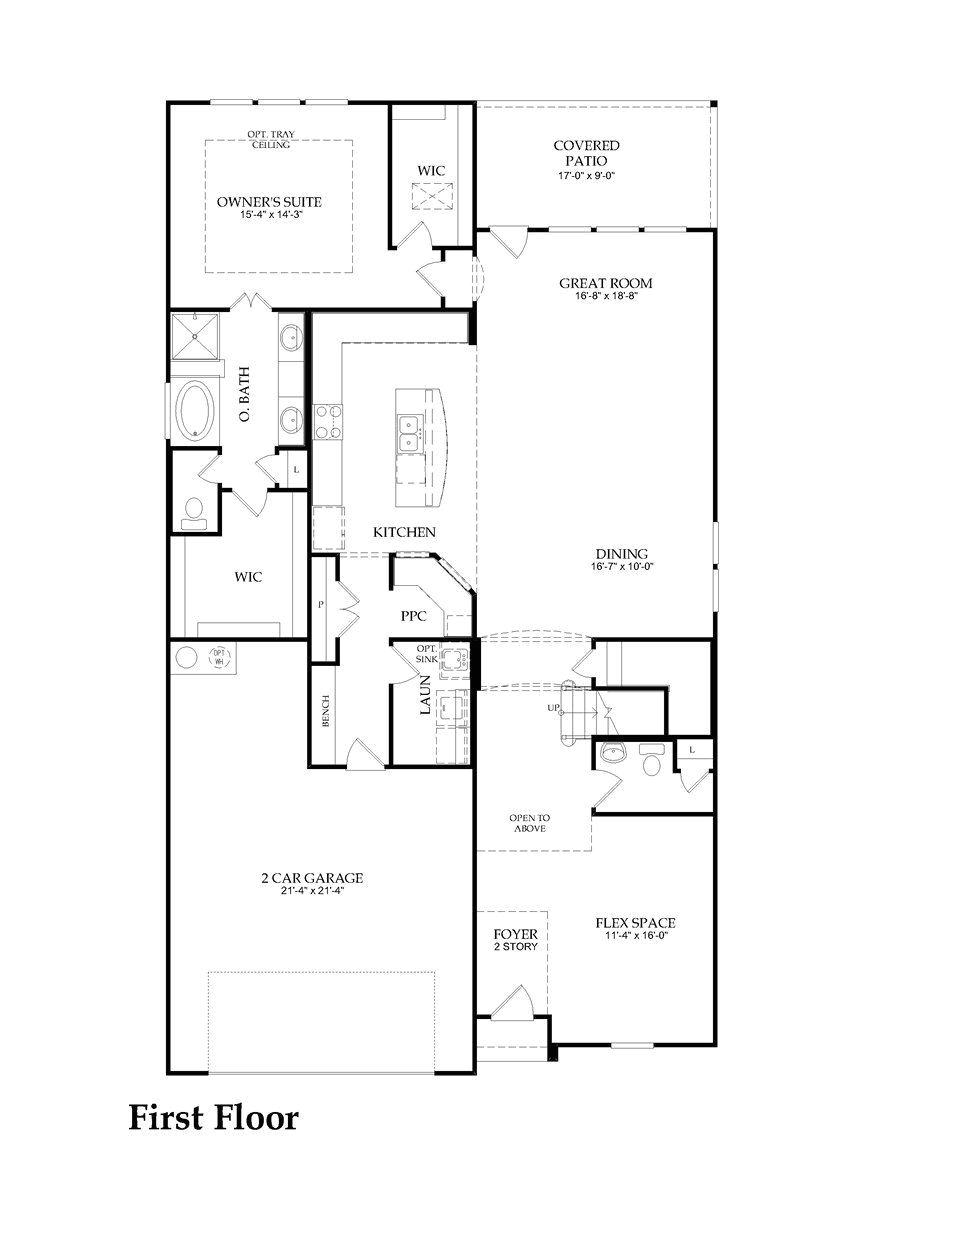 cvs floor plan inspirational karanzas plans modern house part 4 of 20 new cvs floor plan